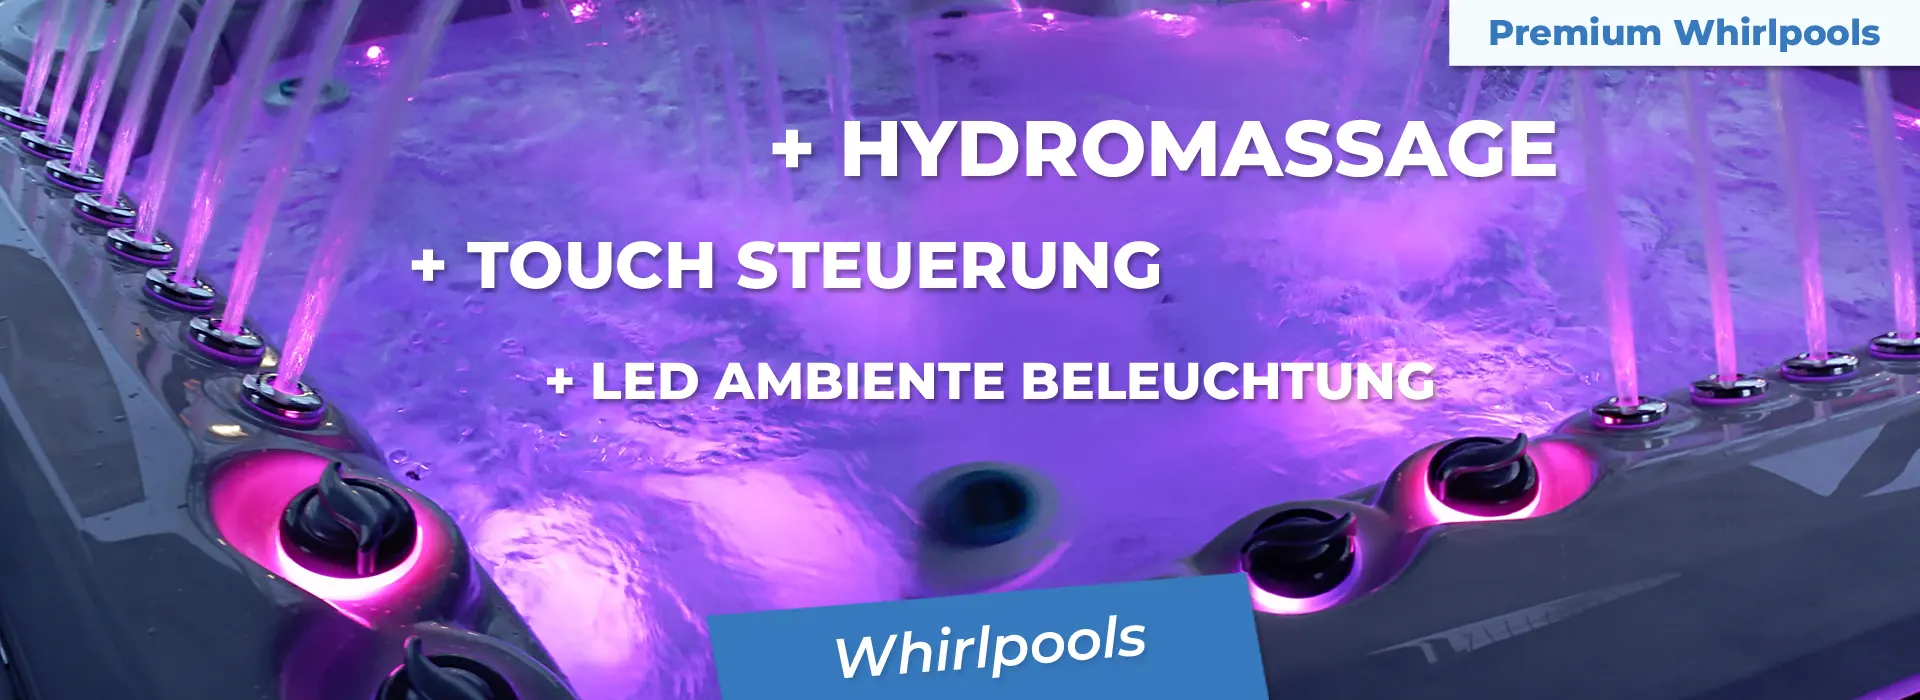 Wellnessland – Premium Whirlpools zum faieren Preis